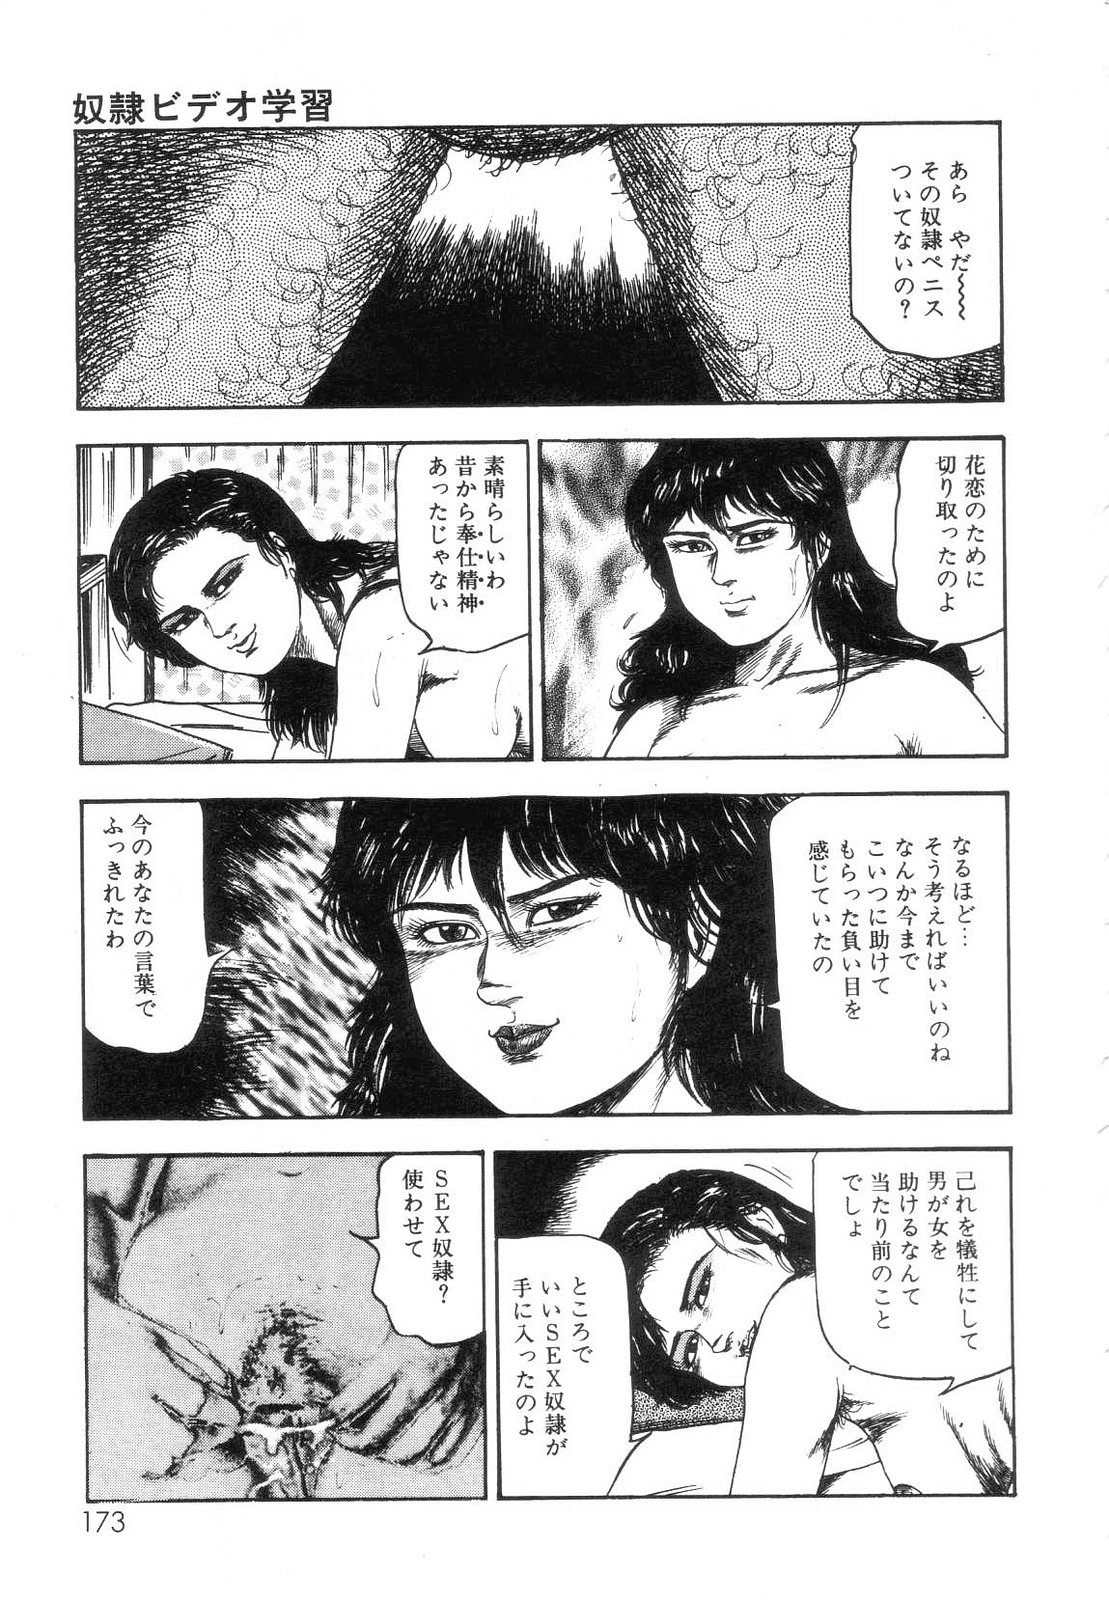 [Sanjou Tomomi] Shiro no Mokushiroku Vol. 7 - Shiiku Ningyou Erika no Shou 174